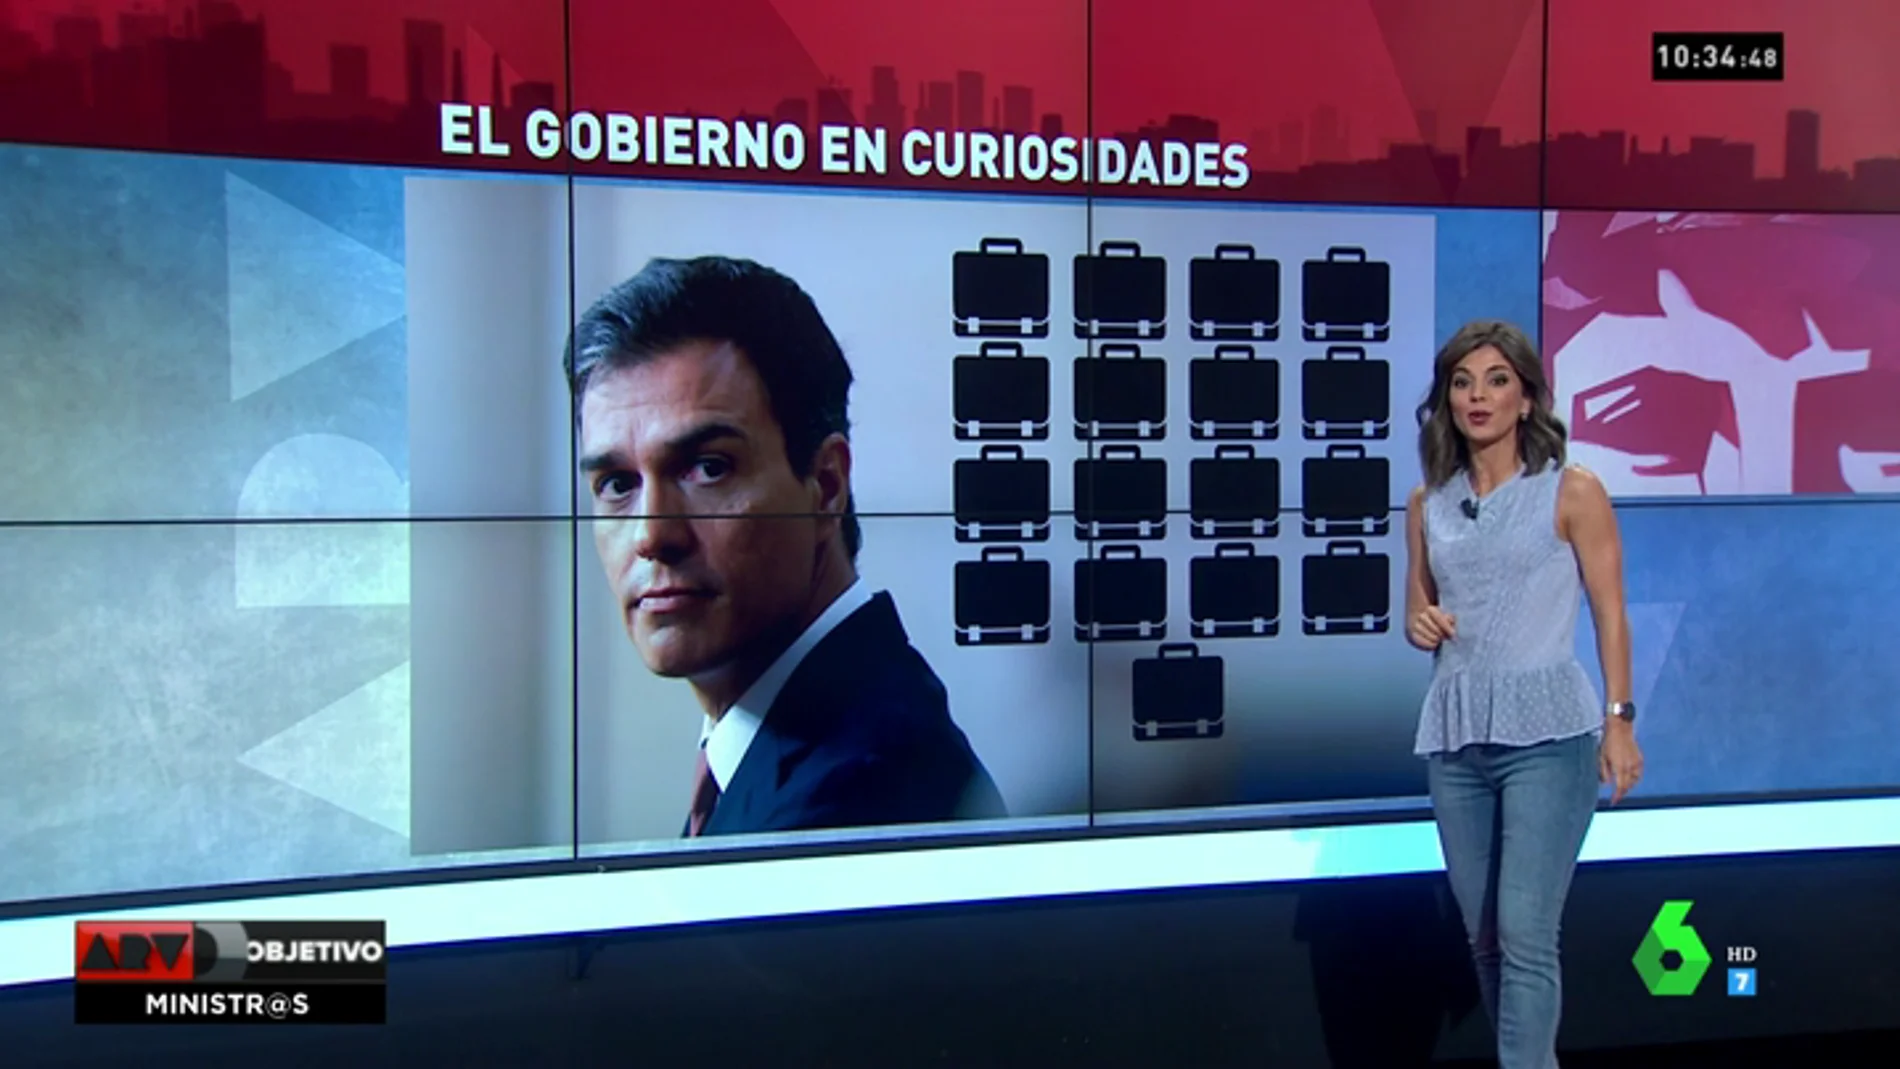 <p>Estas son las curiosidades y las diferencias más notables entre los gobiernos de Rajoy y Sánchez</p>